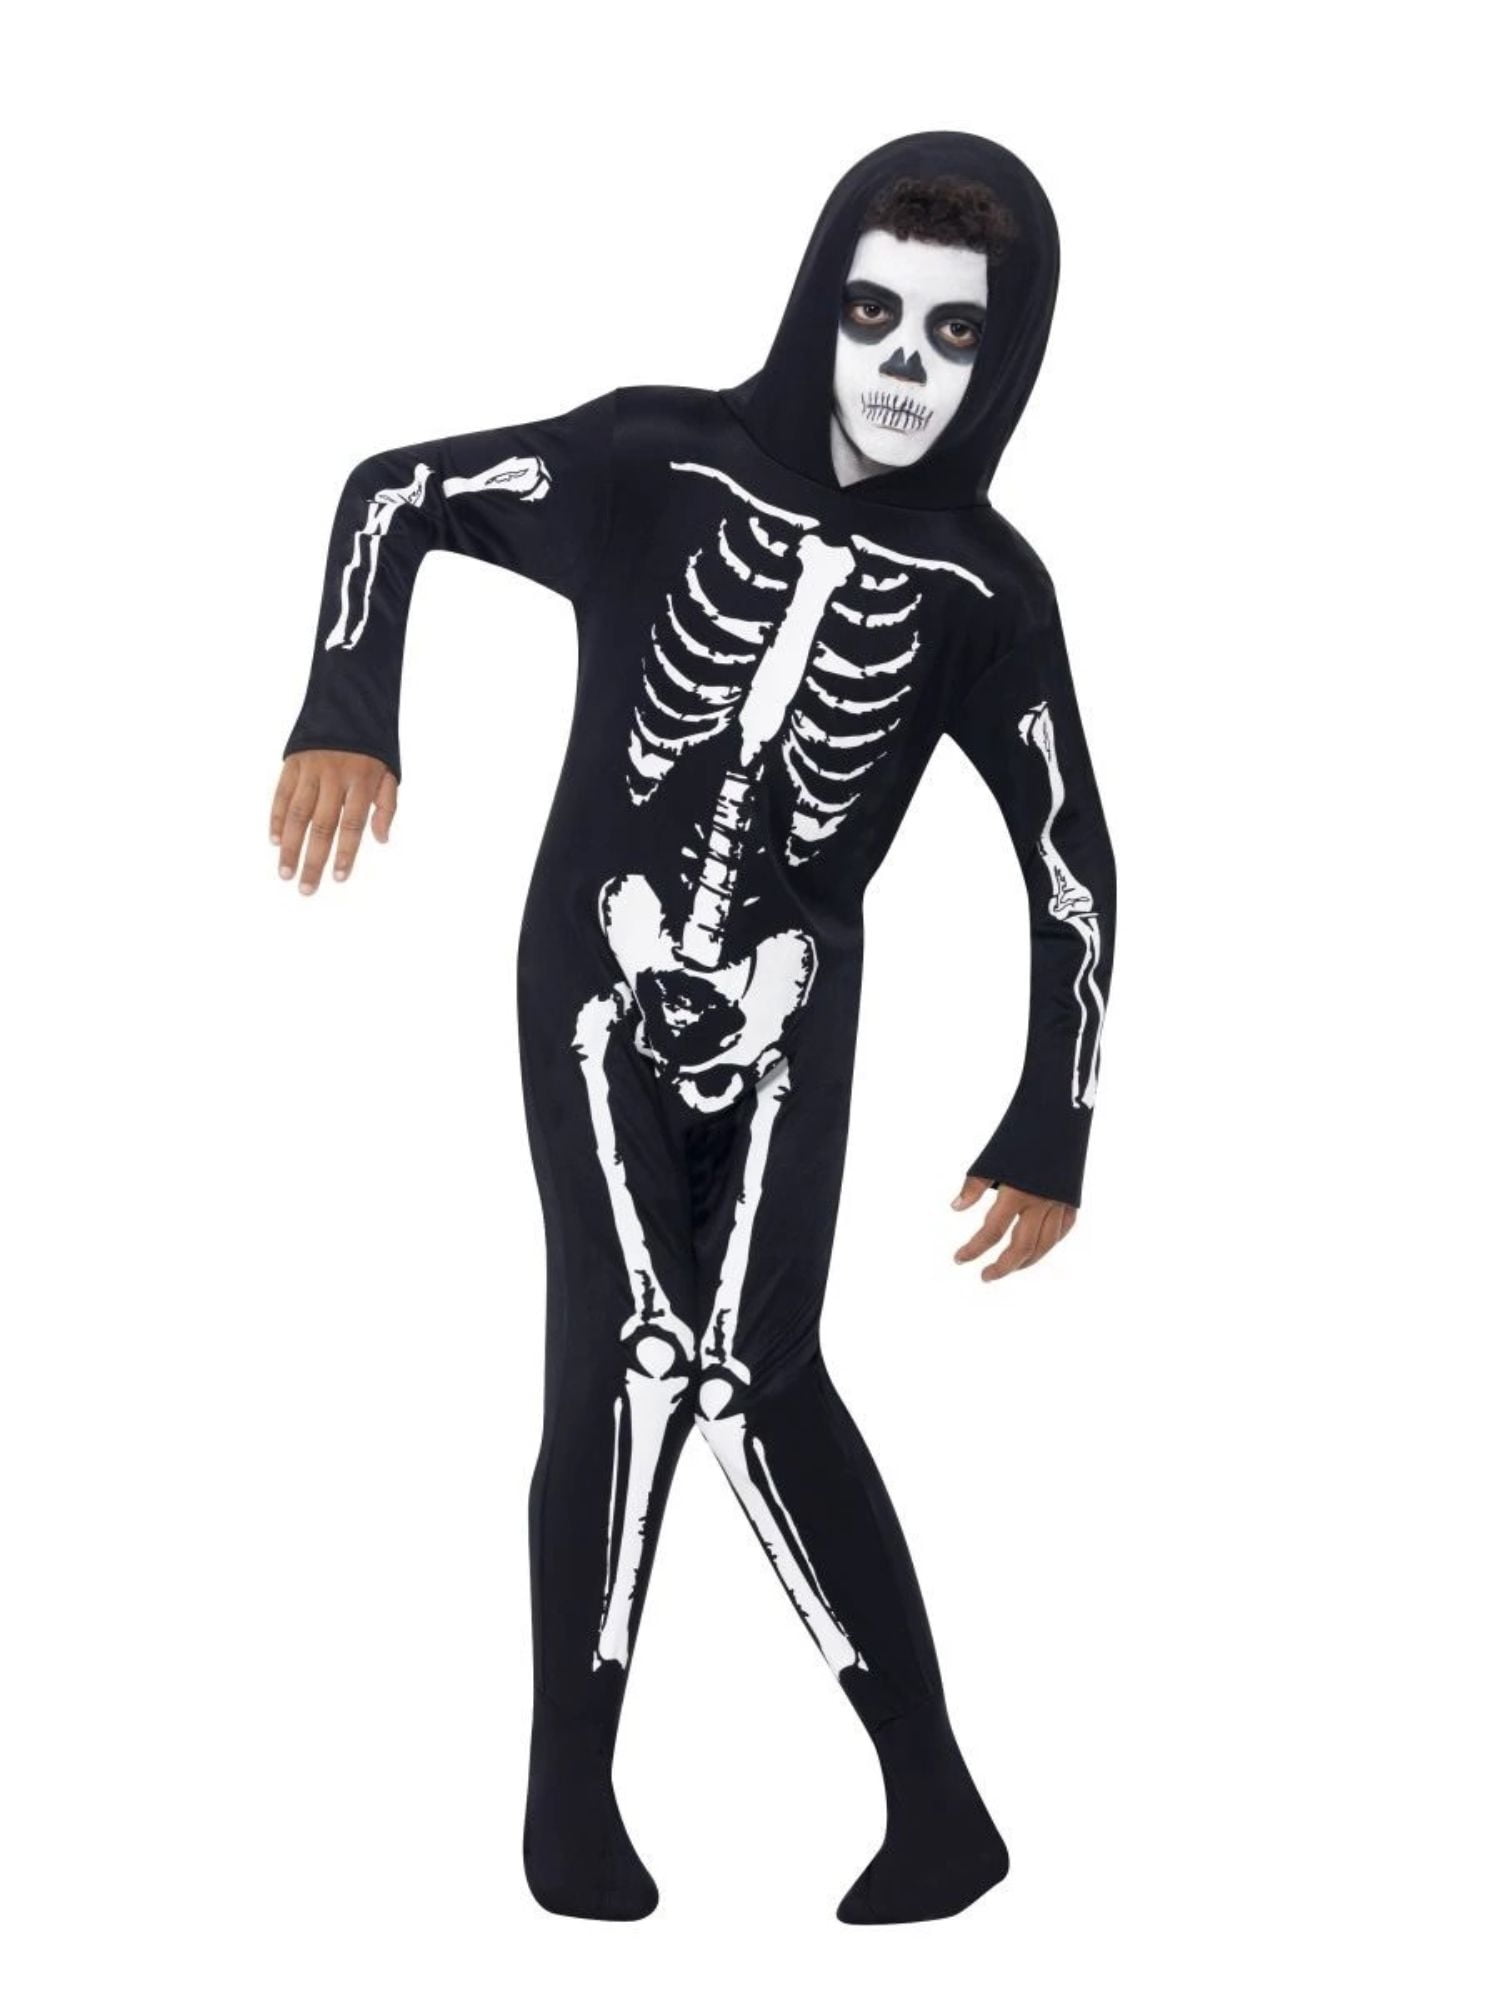 Halloween Enfant Squelette Gants accessoires costume école joue 20426 